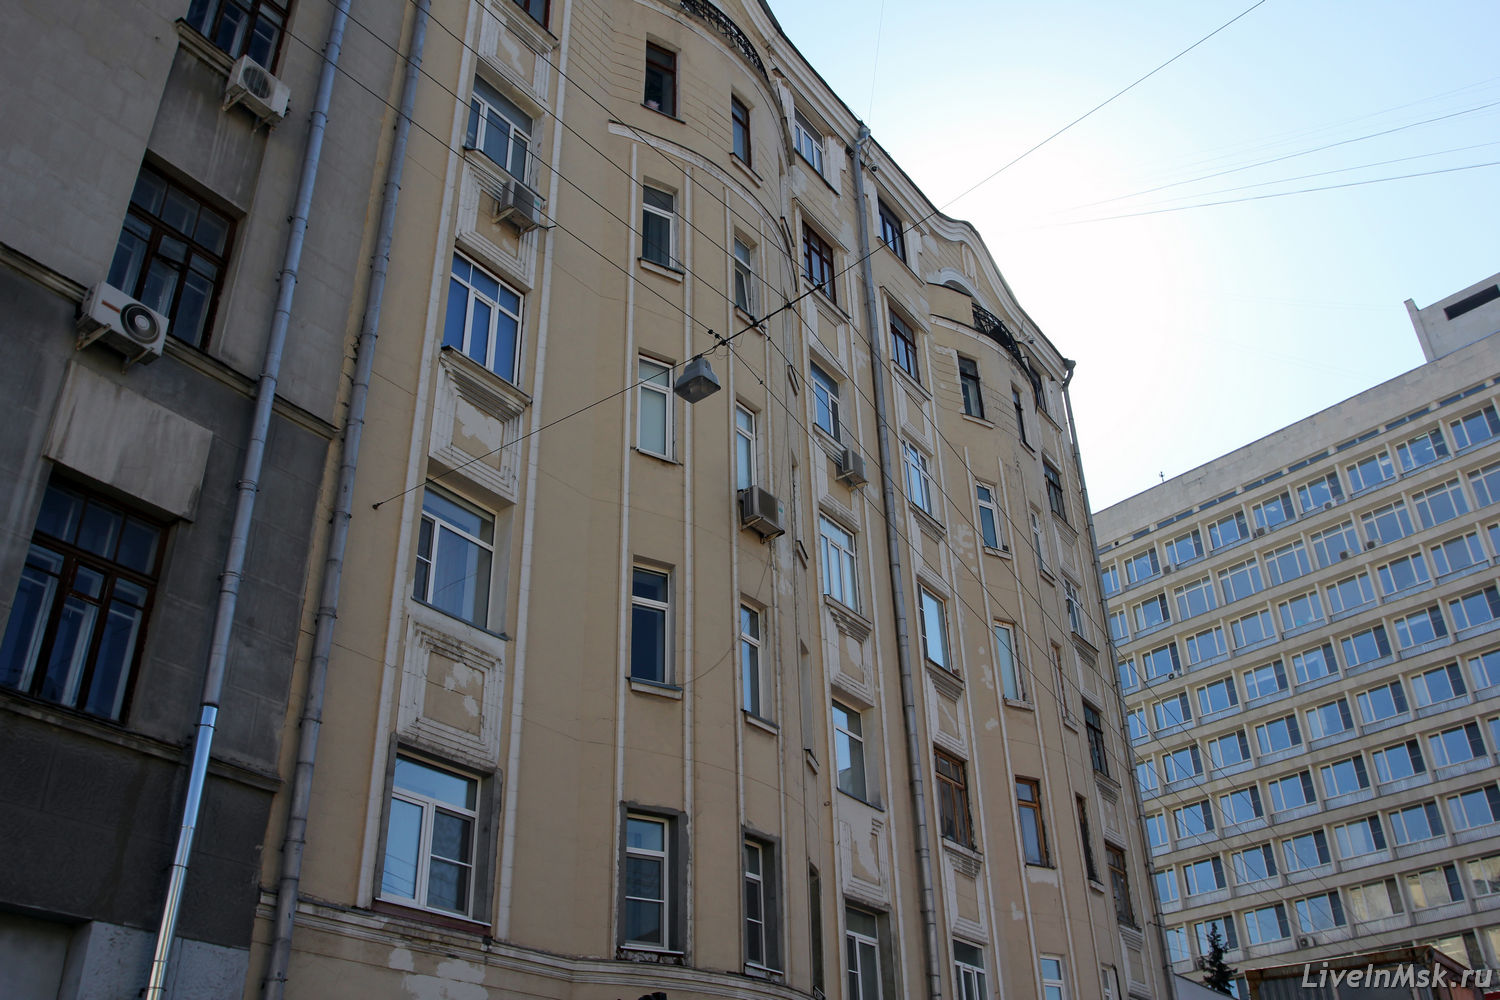 Доходный дом И.В. Борисова, фото 2015 года